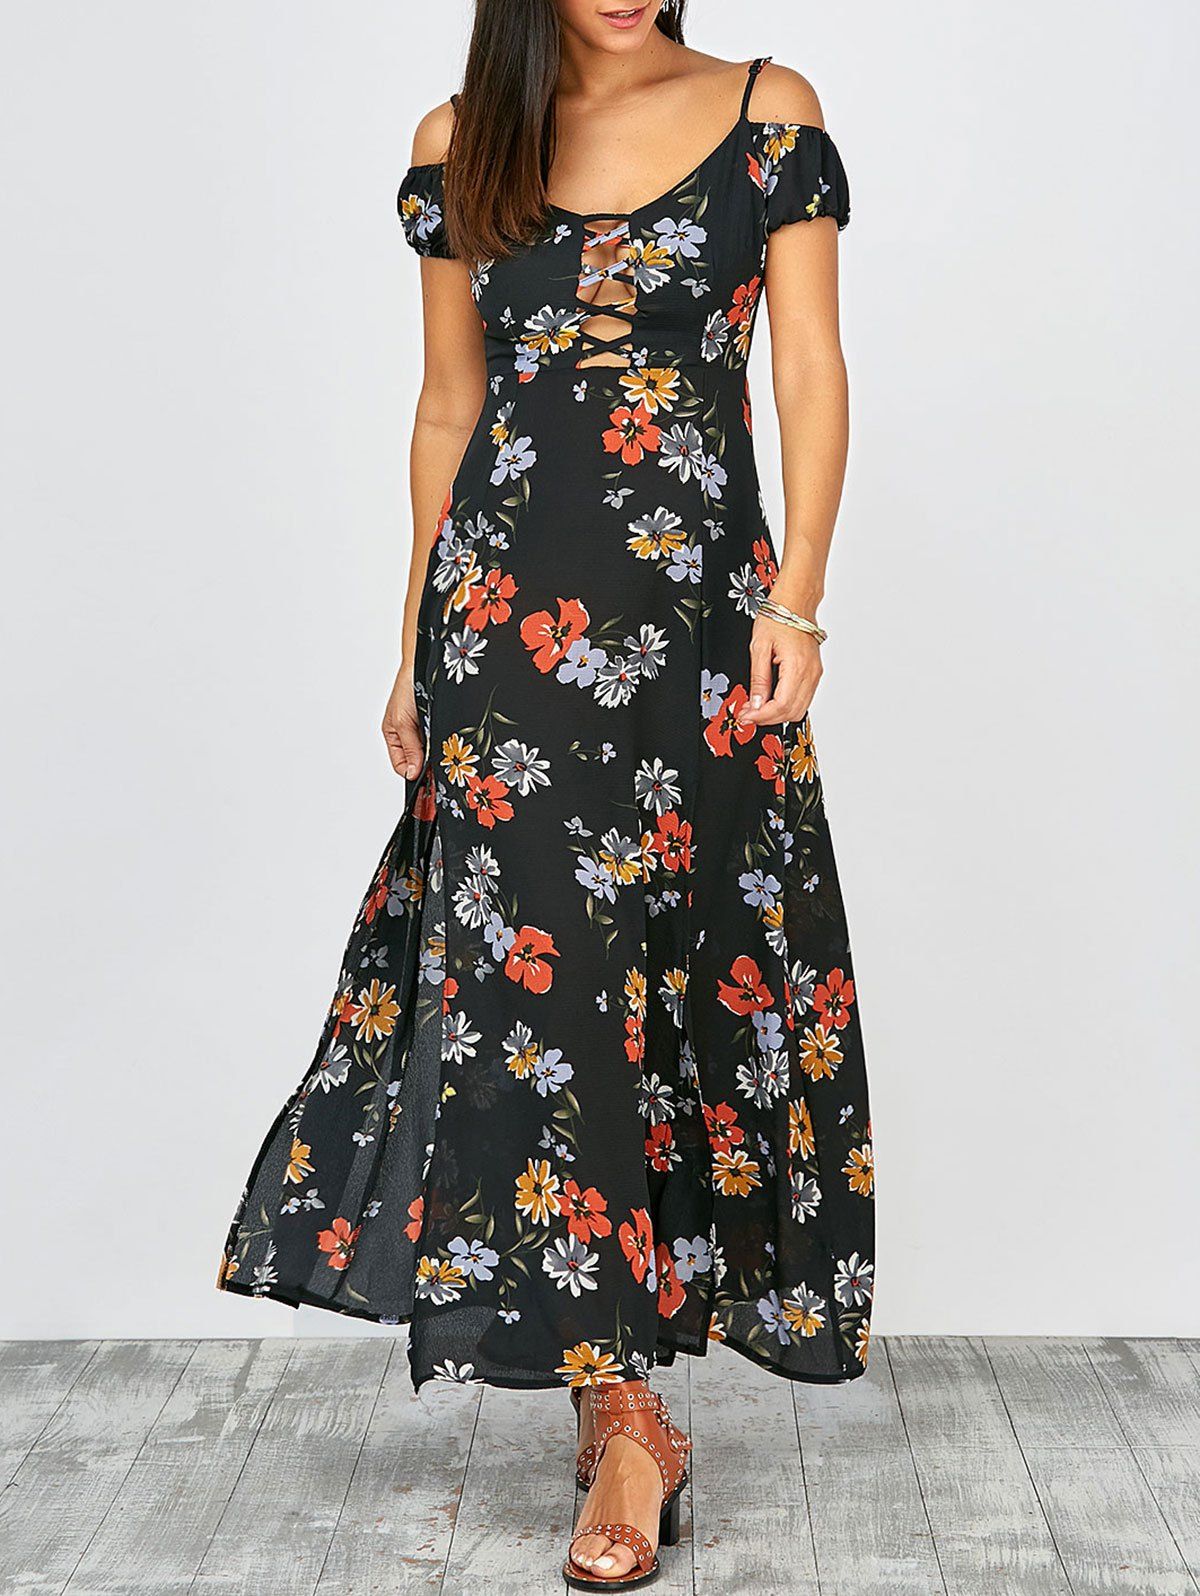 Cold Shoulder Floral Print Slit Maxi Summer Dress, multicolor, XL in ...